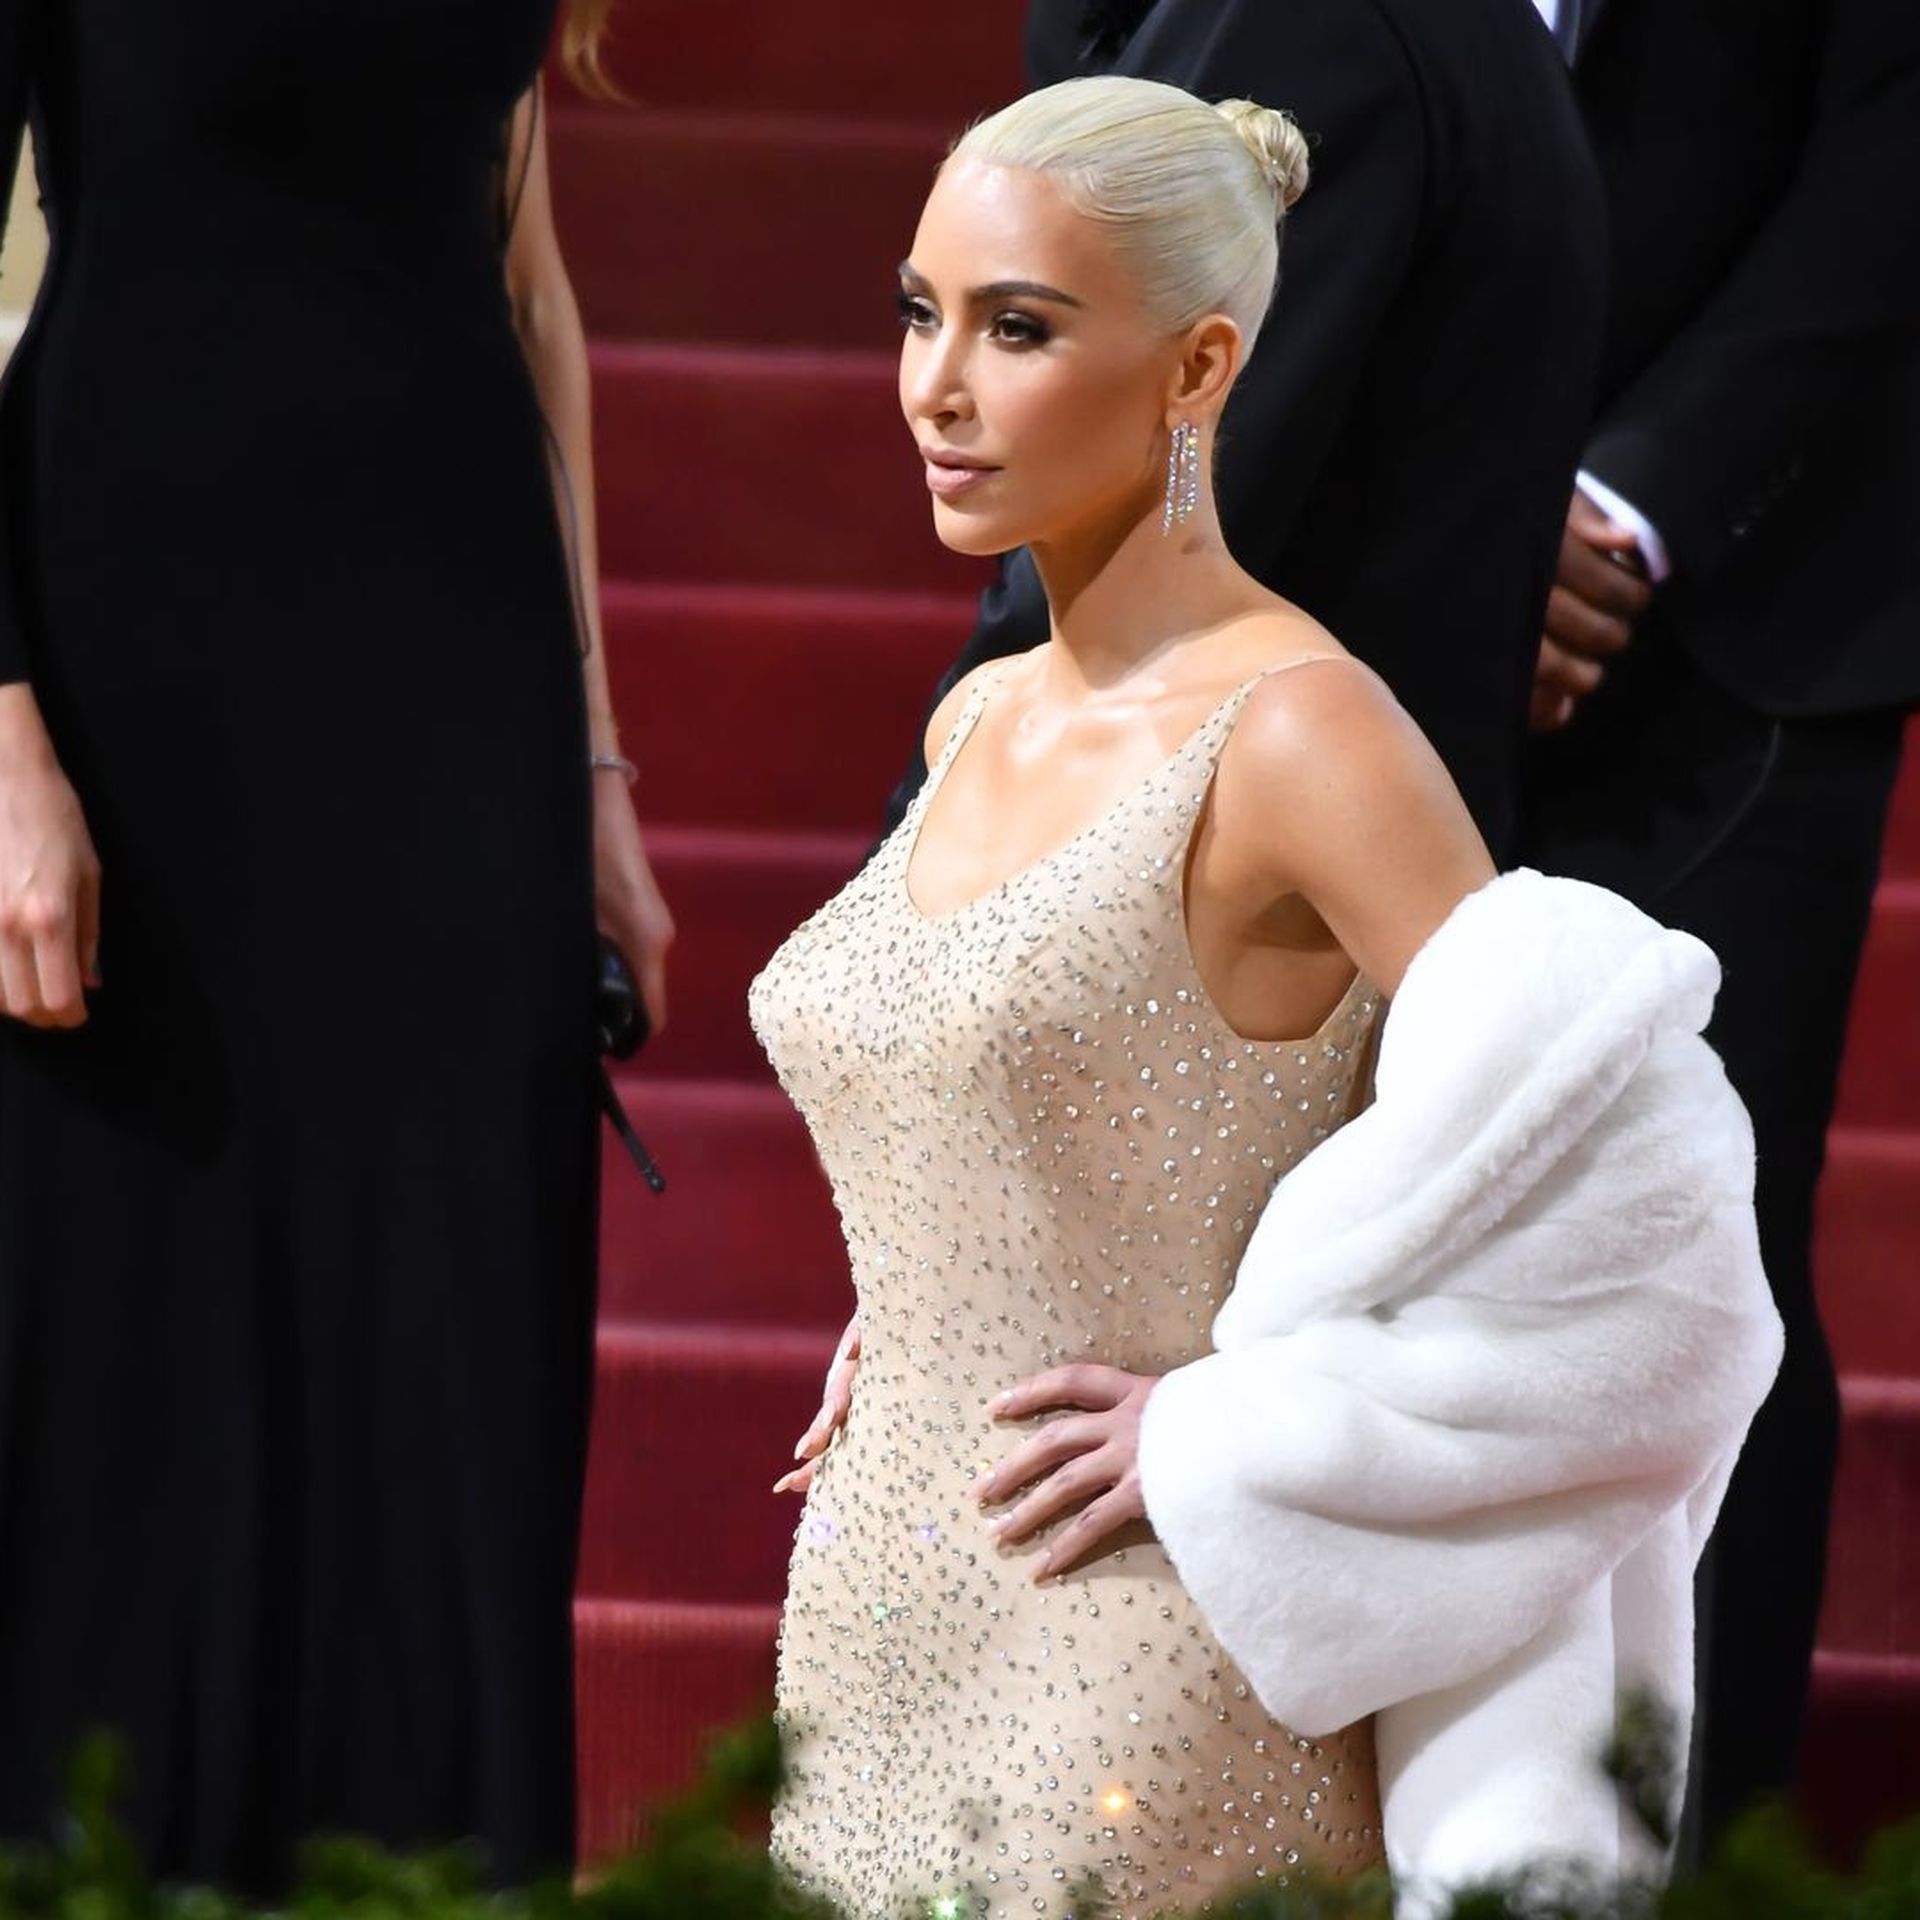 Kim Kardashian at the Met gala 